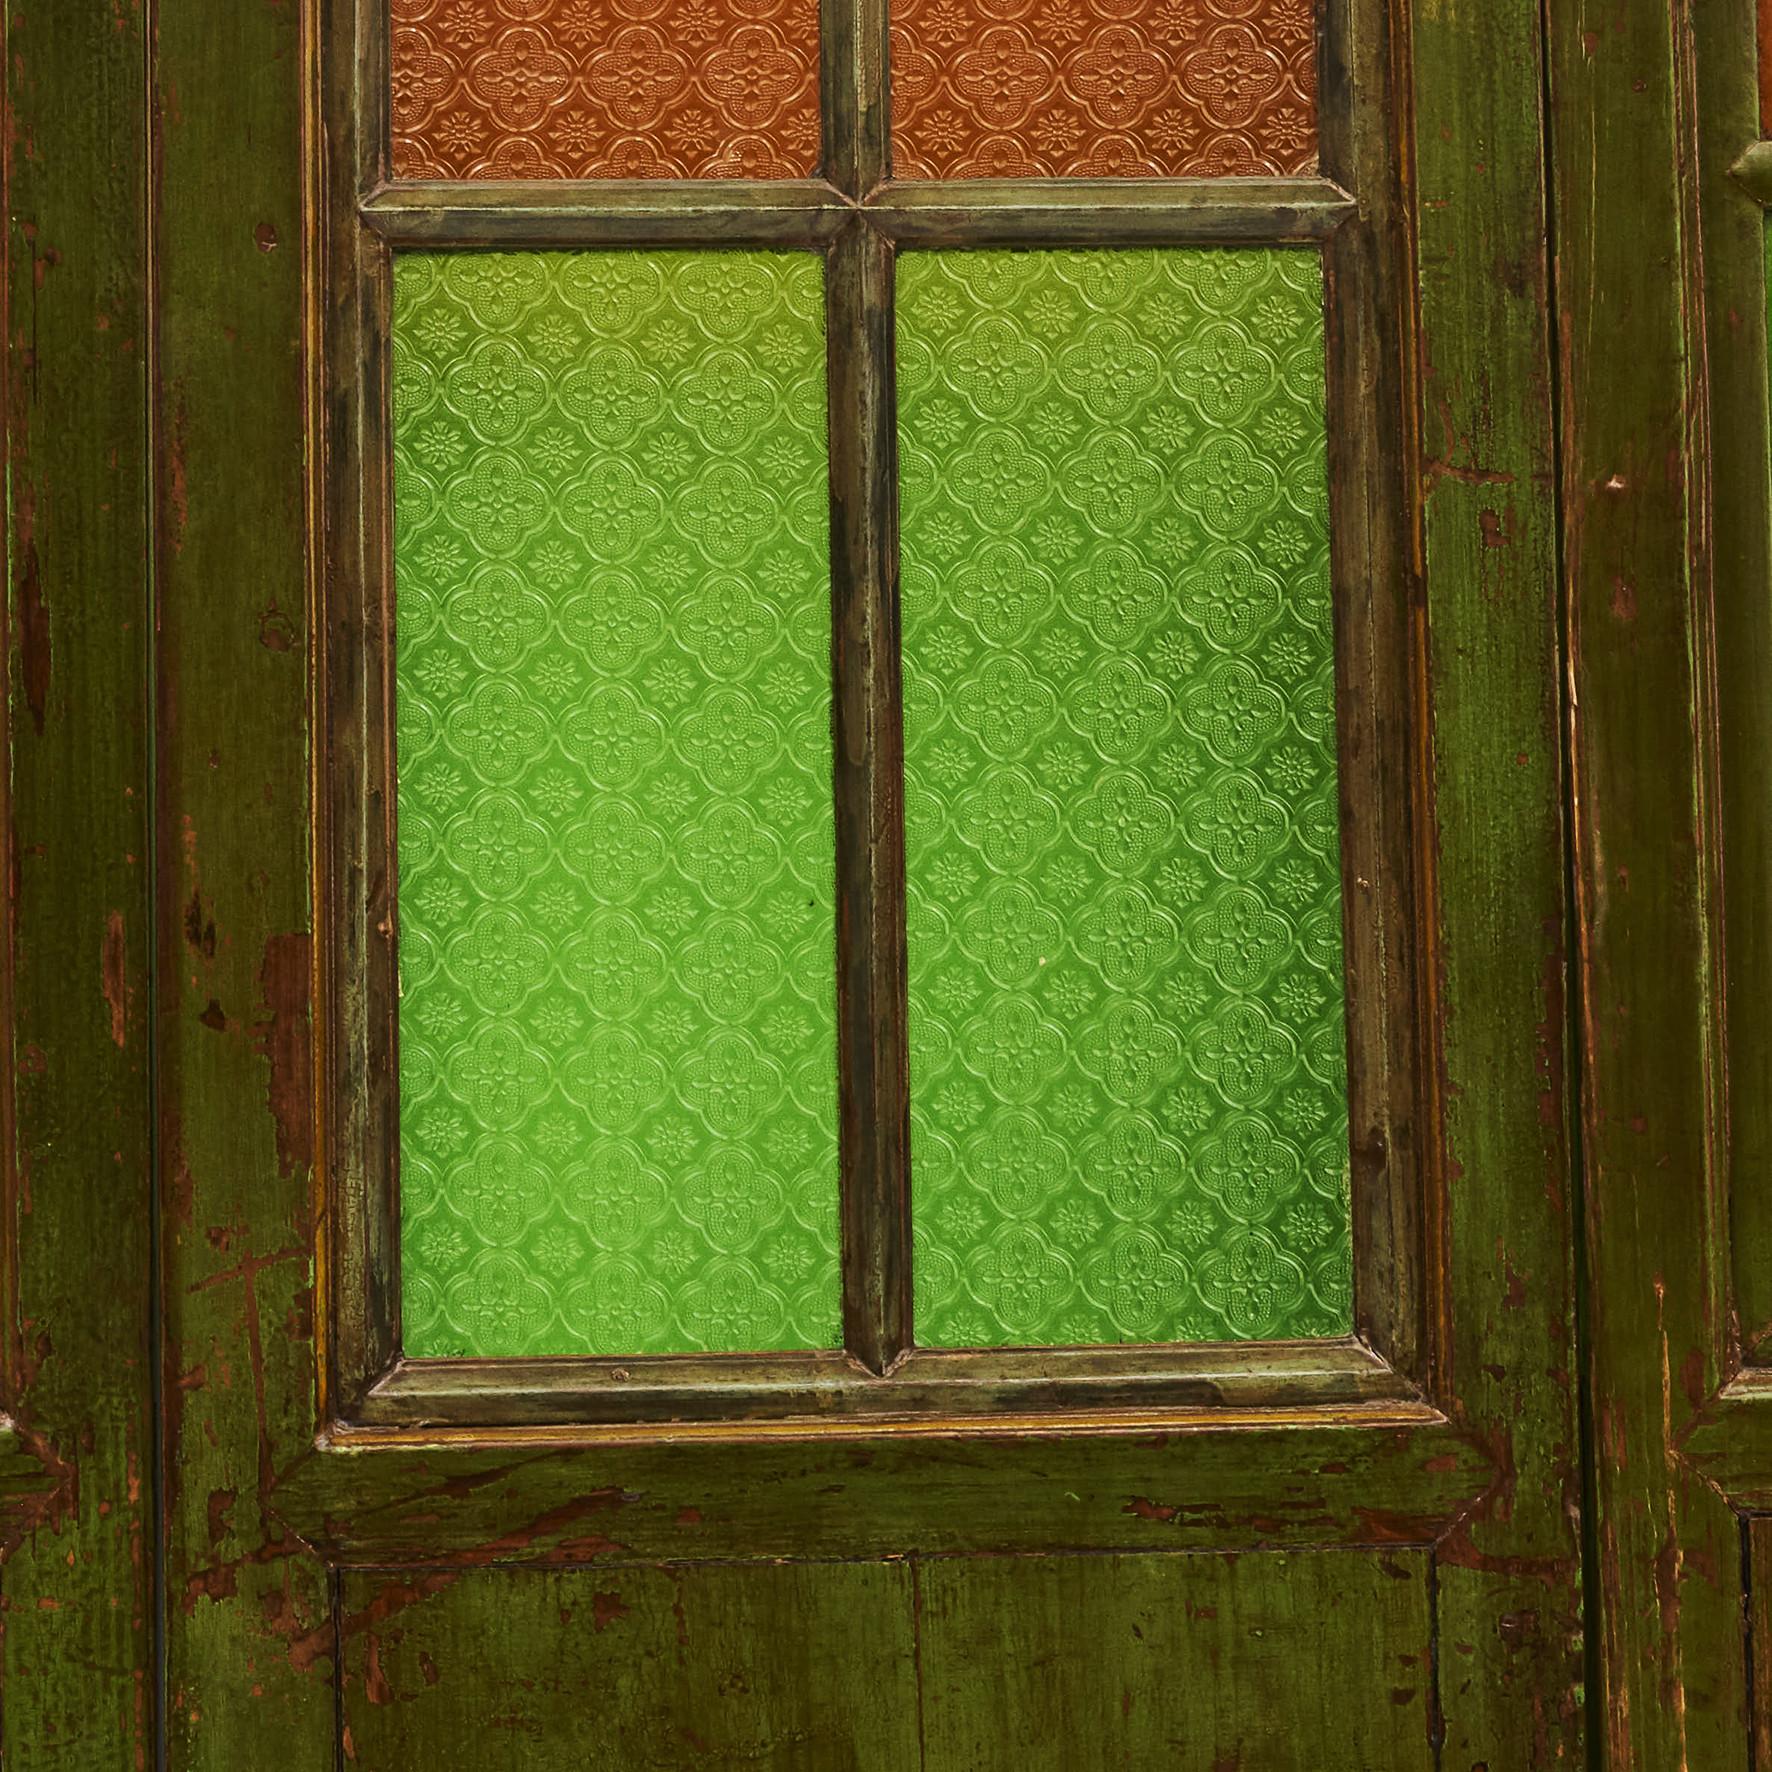 Chinesischer sechsteiliger Jugendstil-Raumteiler oder Paravent.
Holz mit grünem Originallack. Jedes Paneel besteht aus 6 quadratischen farbigen Glasscheiben und ist am unteren Rand mit dekorativen Verzierungen versehen.
Shanghai, um 1900.
Der